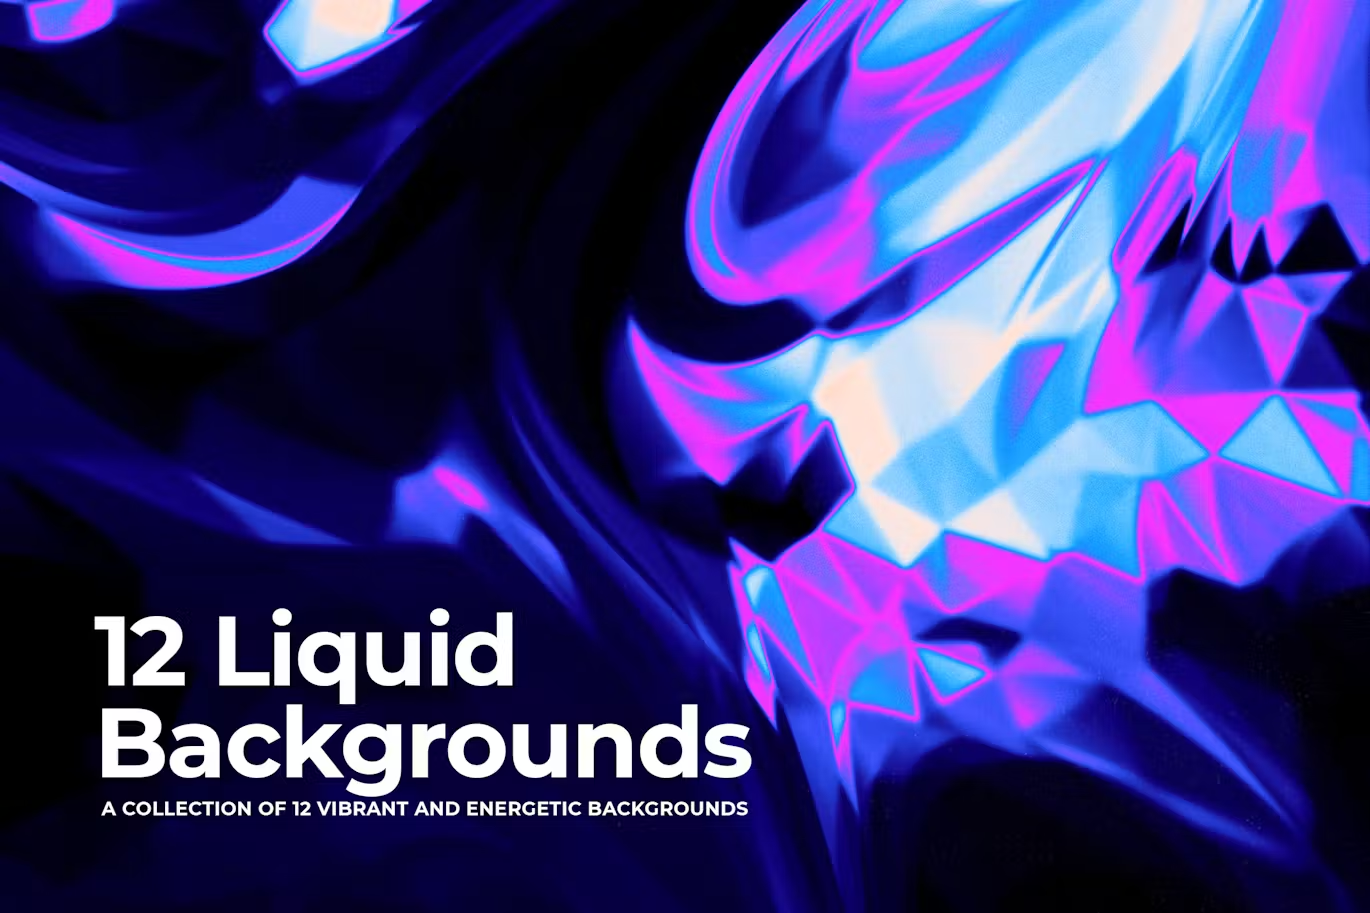 6064 12款生动活泼的液体背景素材-12 Liquid Backgrounds